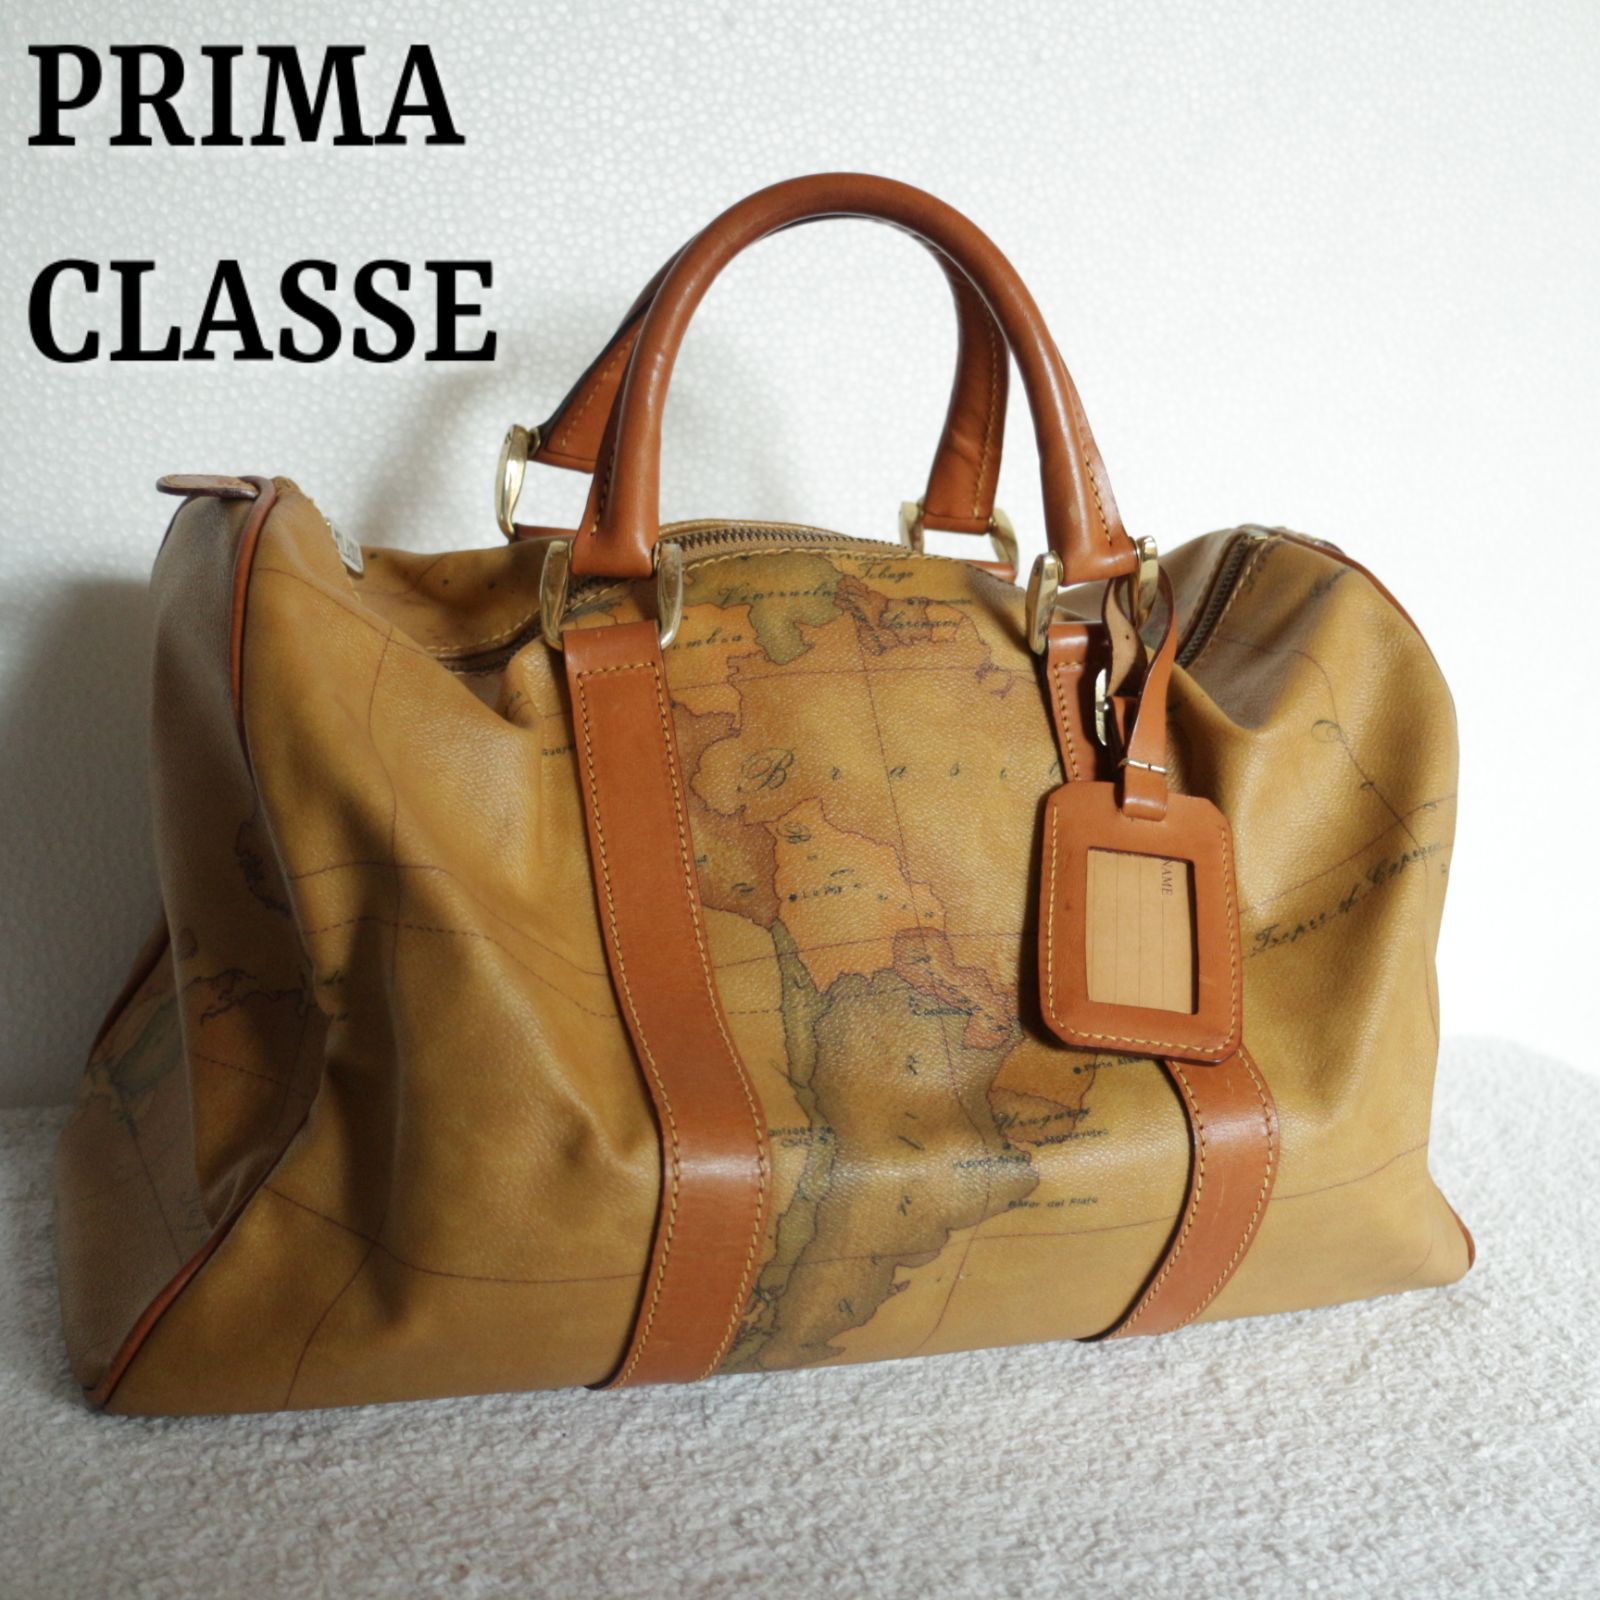 プリマクラッセ PRIMA CLASSE ミニボストンバッグ 2way